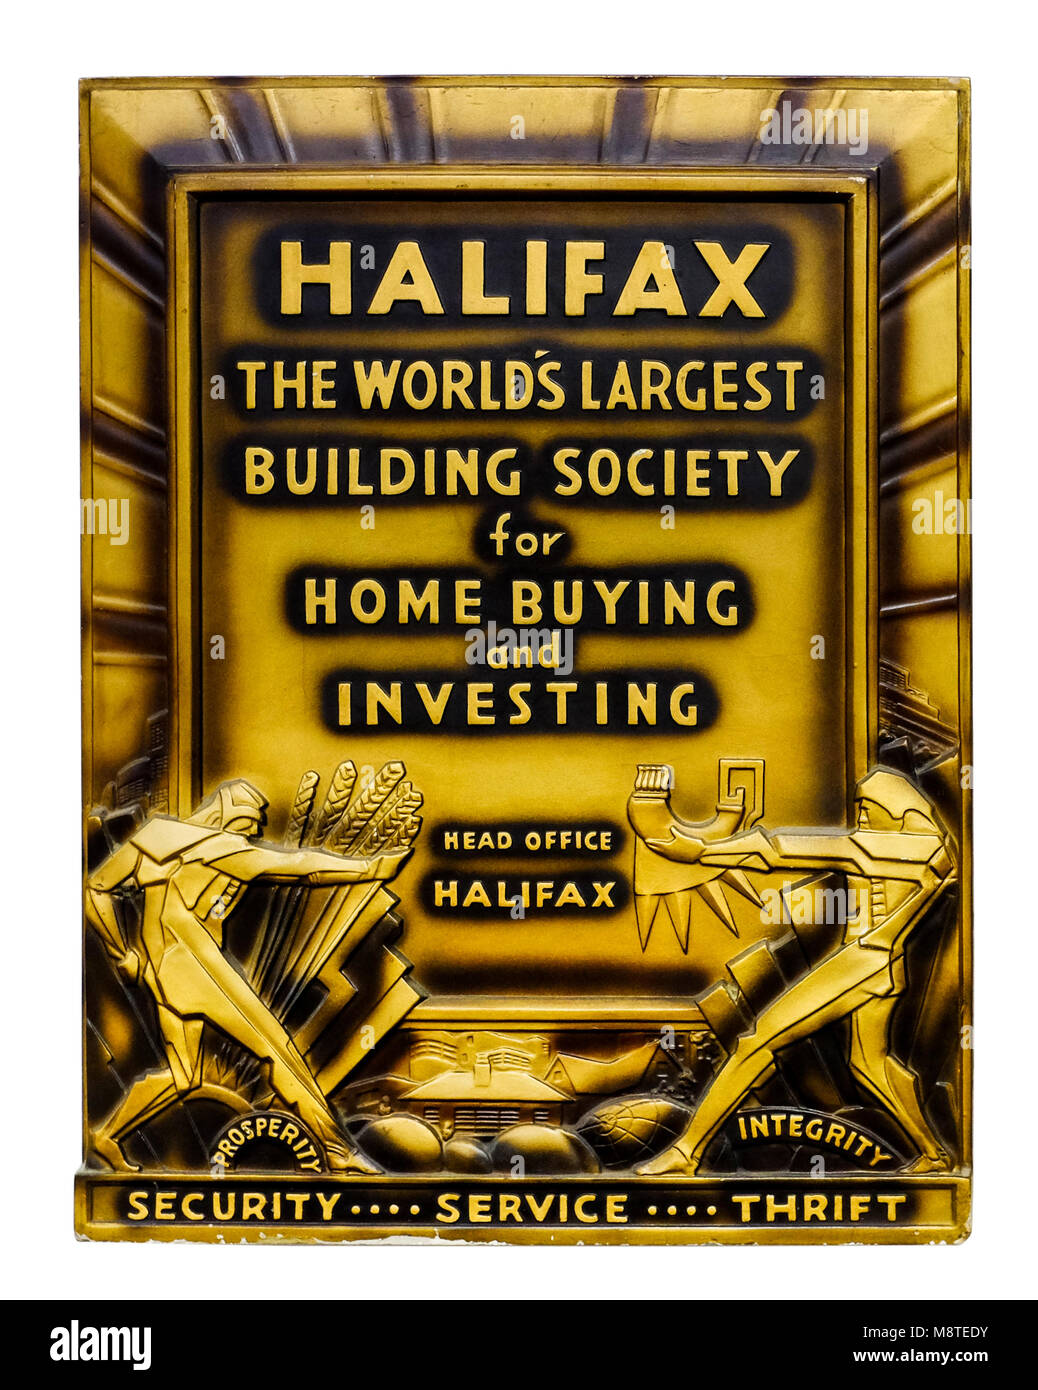 Publicidad Art Deco / placa de pared promocional para el Halifax Building Society (ahora parte de Lloyds Banking Group). Foto de stock